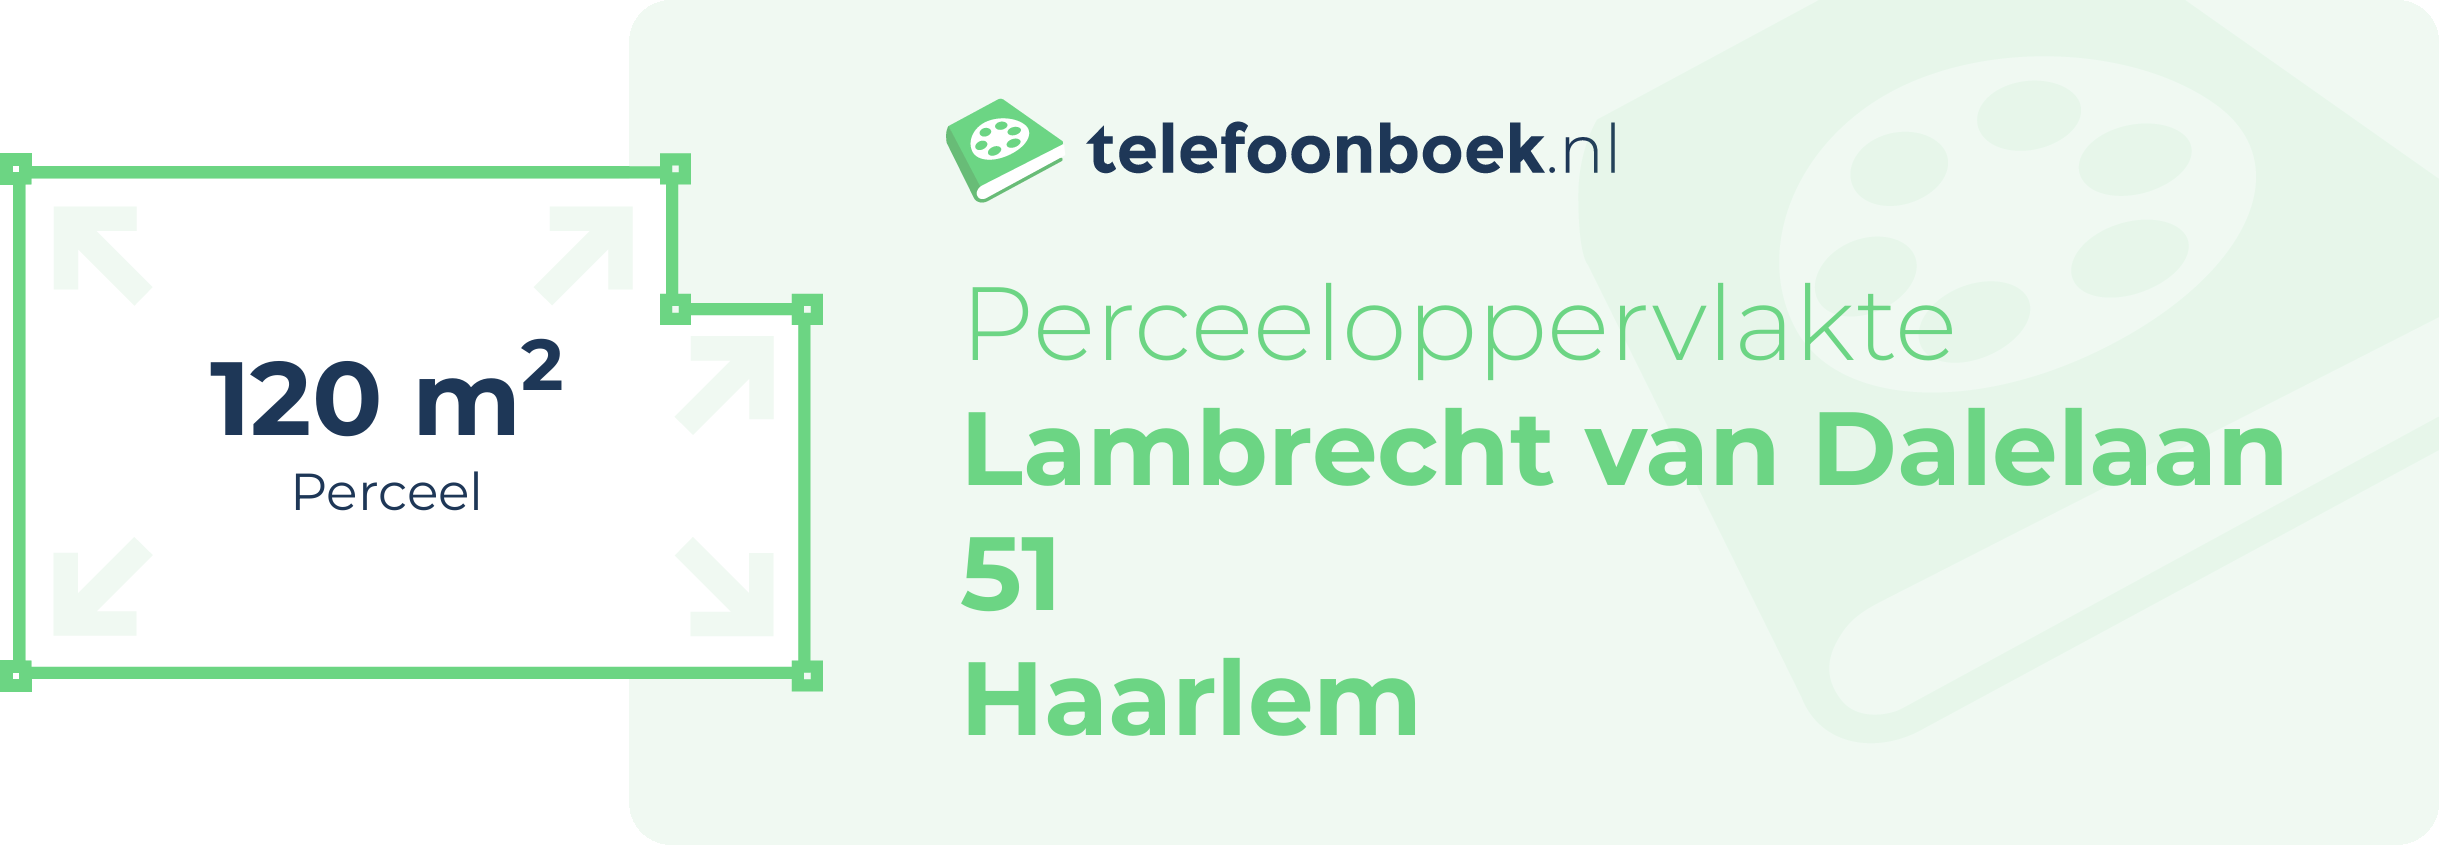 Perceeloppervlakte Lambrecht Van Dalelaan 51 Haarlem